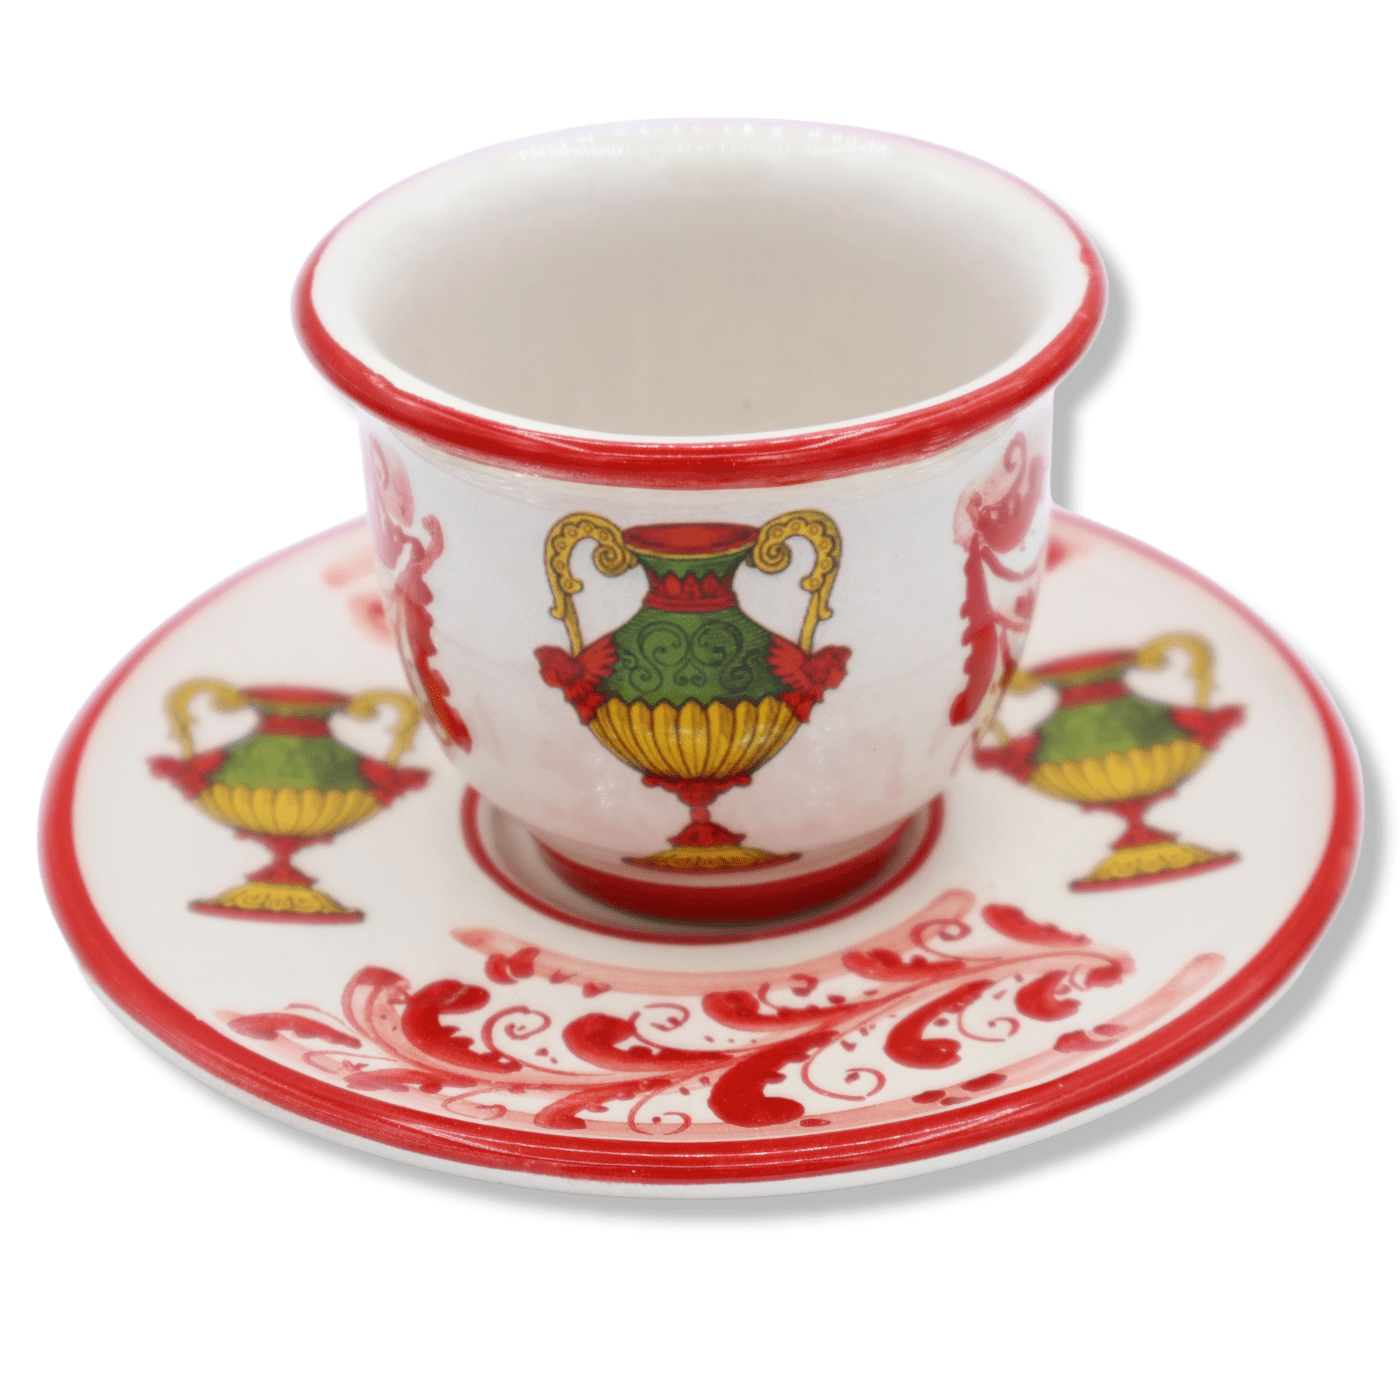 Xícara de café em cerâmica siciliana fina, decoração selecionável - h 5 cm  aprox. (1Pçs) Mod NL OPÇÃO DE DECORAÇÃO SELECIONADA Decoro 1